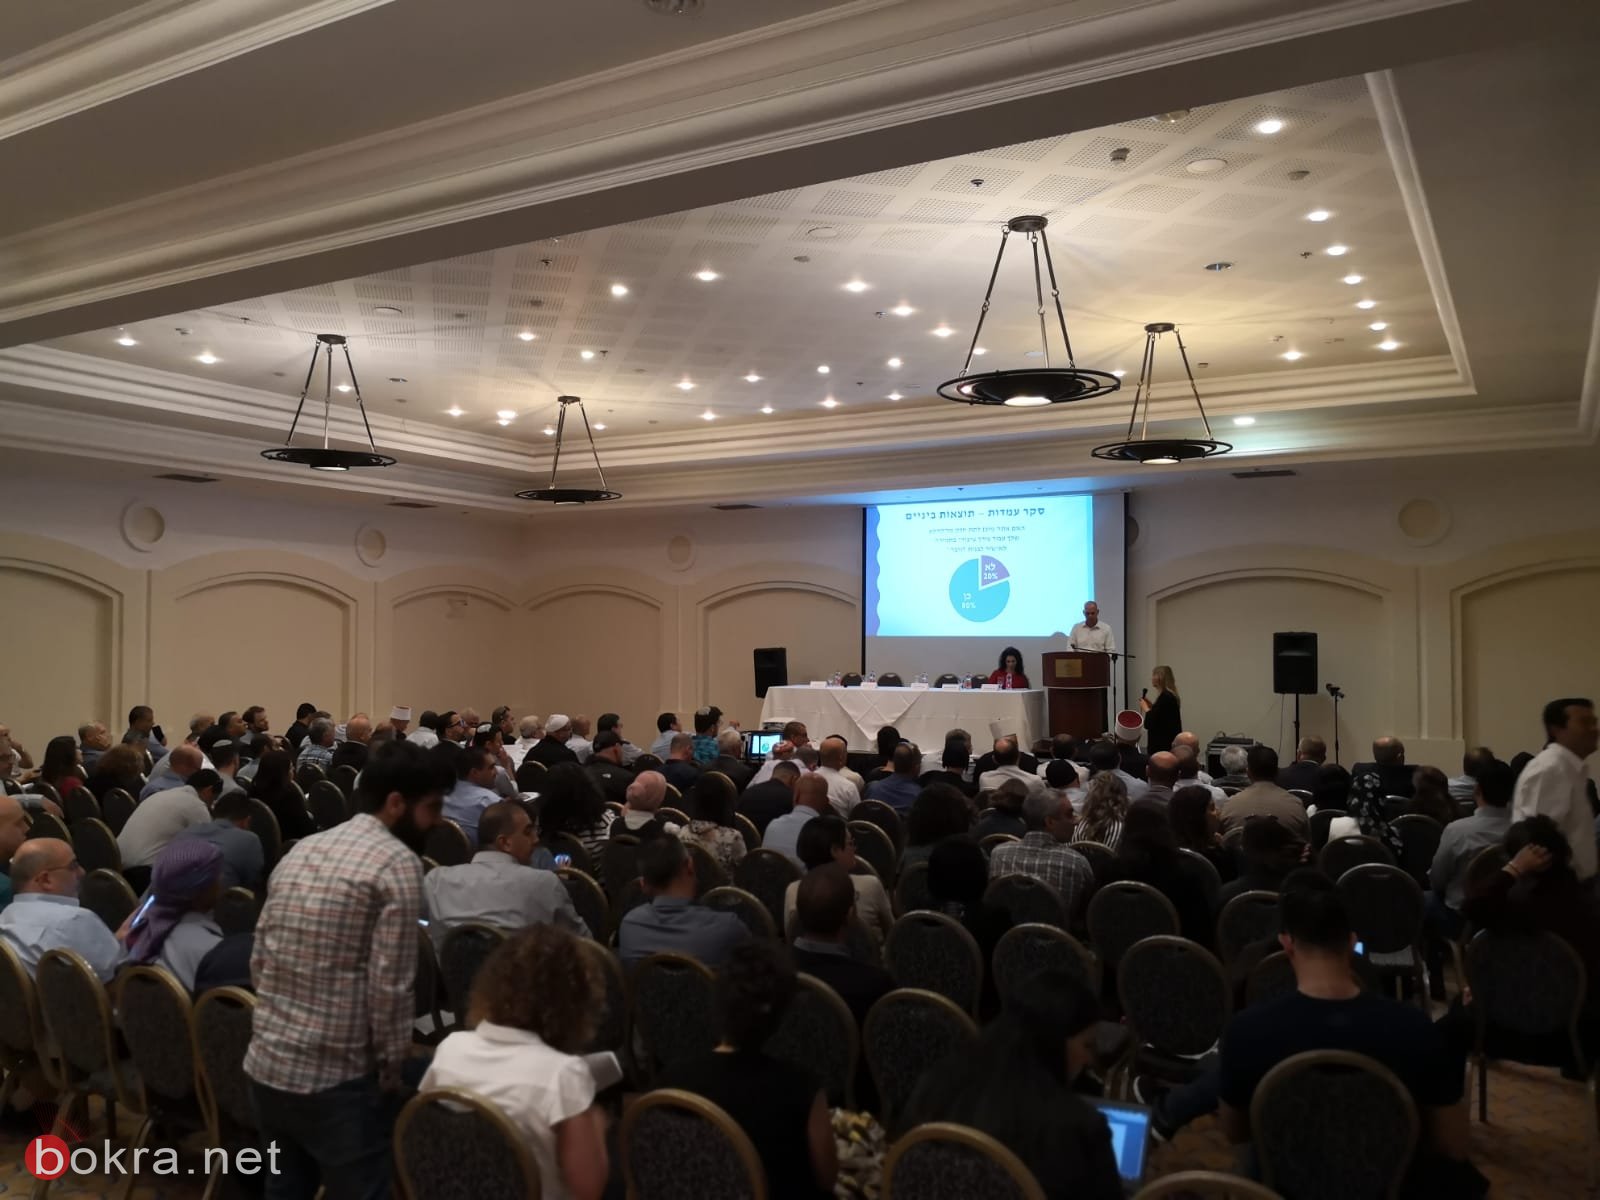 ايمي بلمور: مؤتمر الناصرة حول التخطيط والبناء يؤكد جدية وزارة القضاء والحكومة في إيجاد الحلول -13